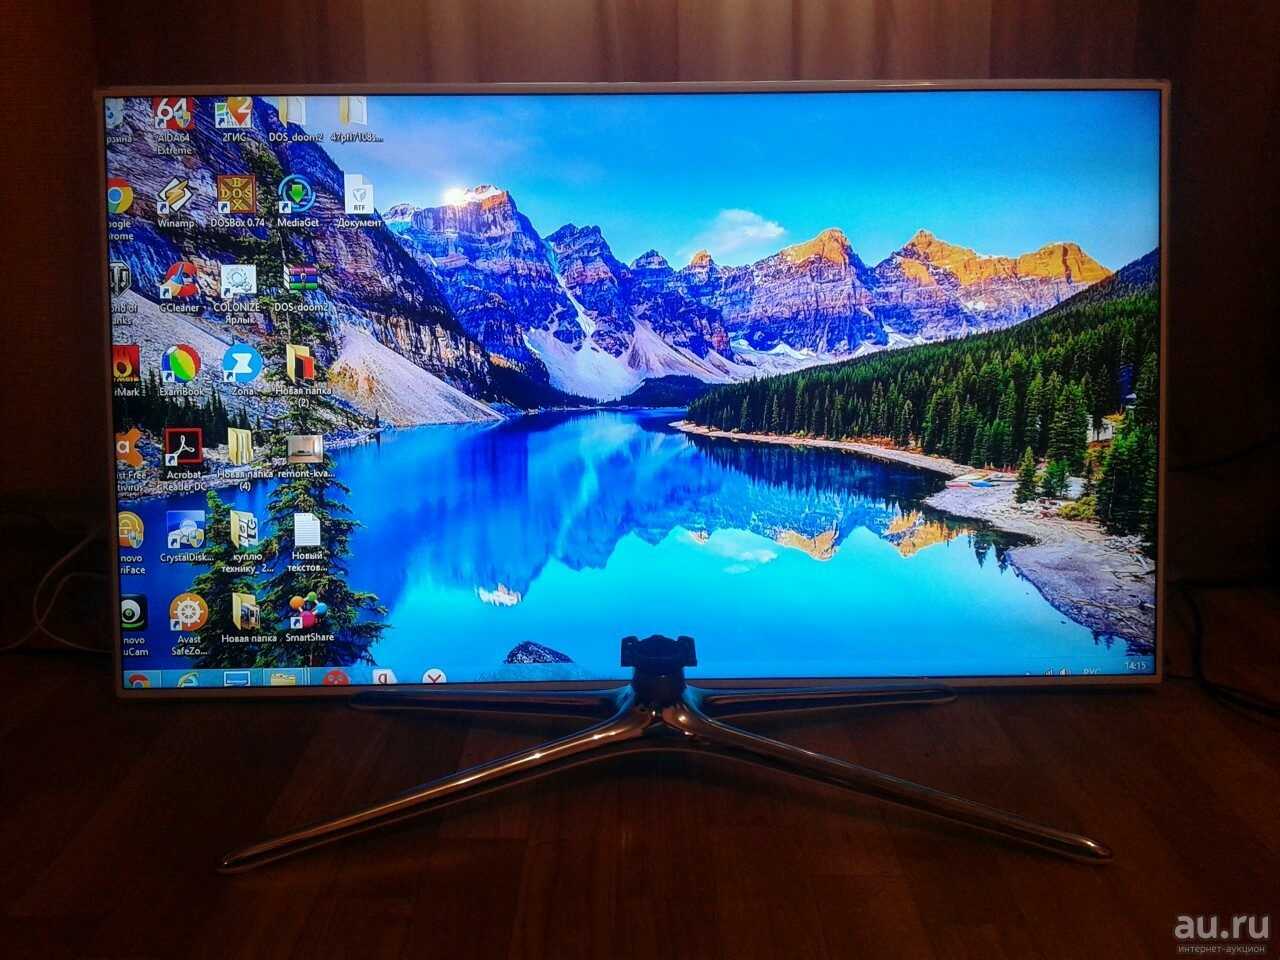 Телевизор Samsung UE46F6270 - подробные характеристики обзоры видео фото Цены в интернет-магазинах где можно купить телевизор Samsung UE46F6270